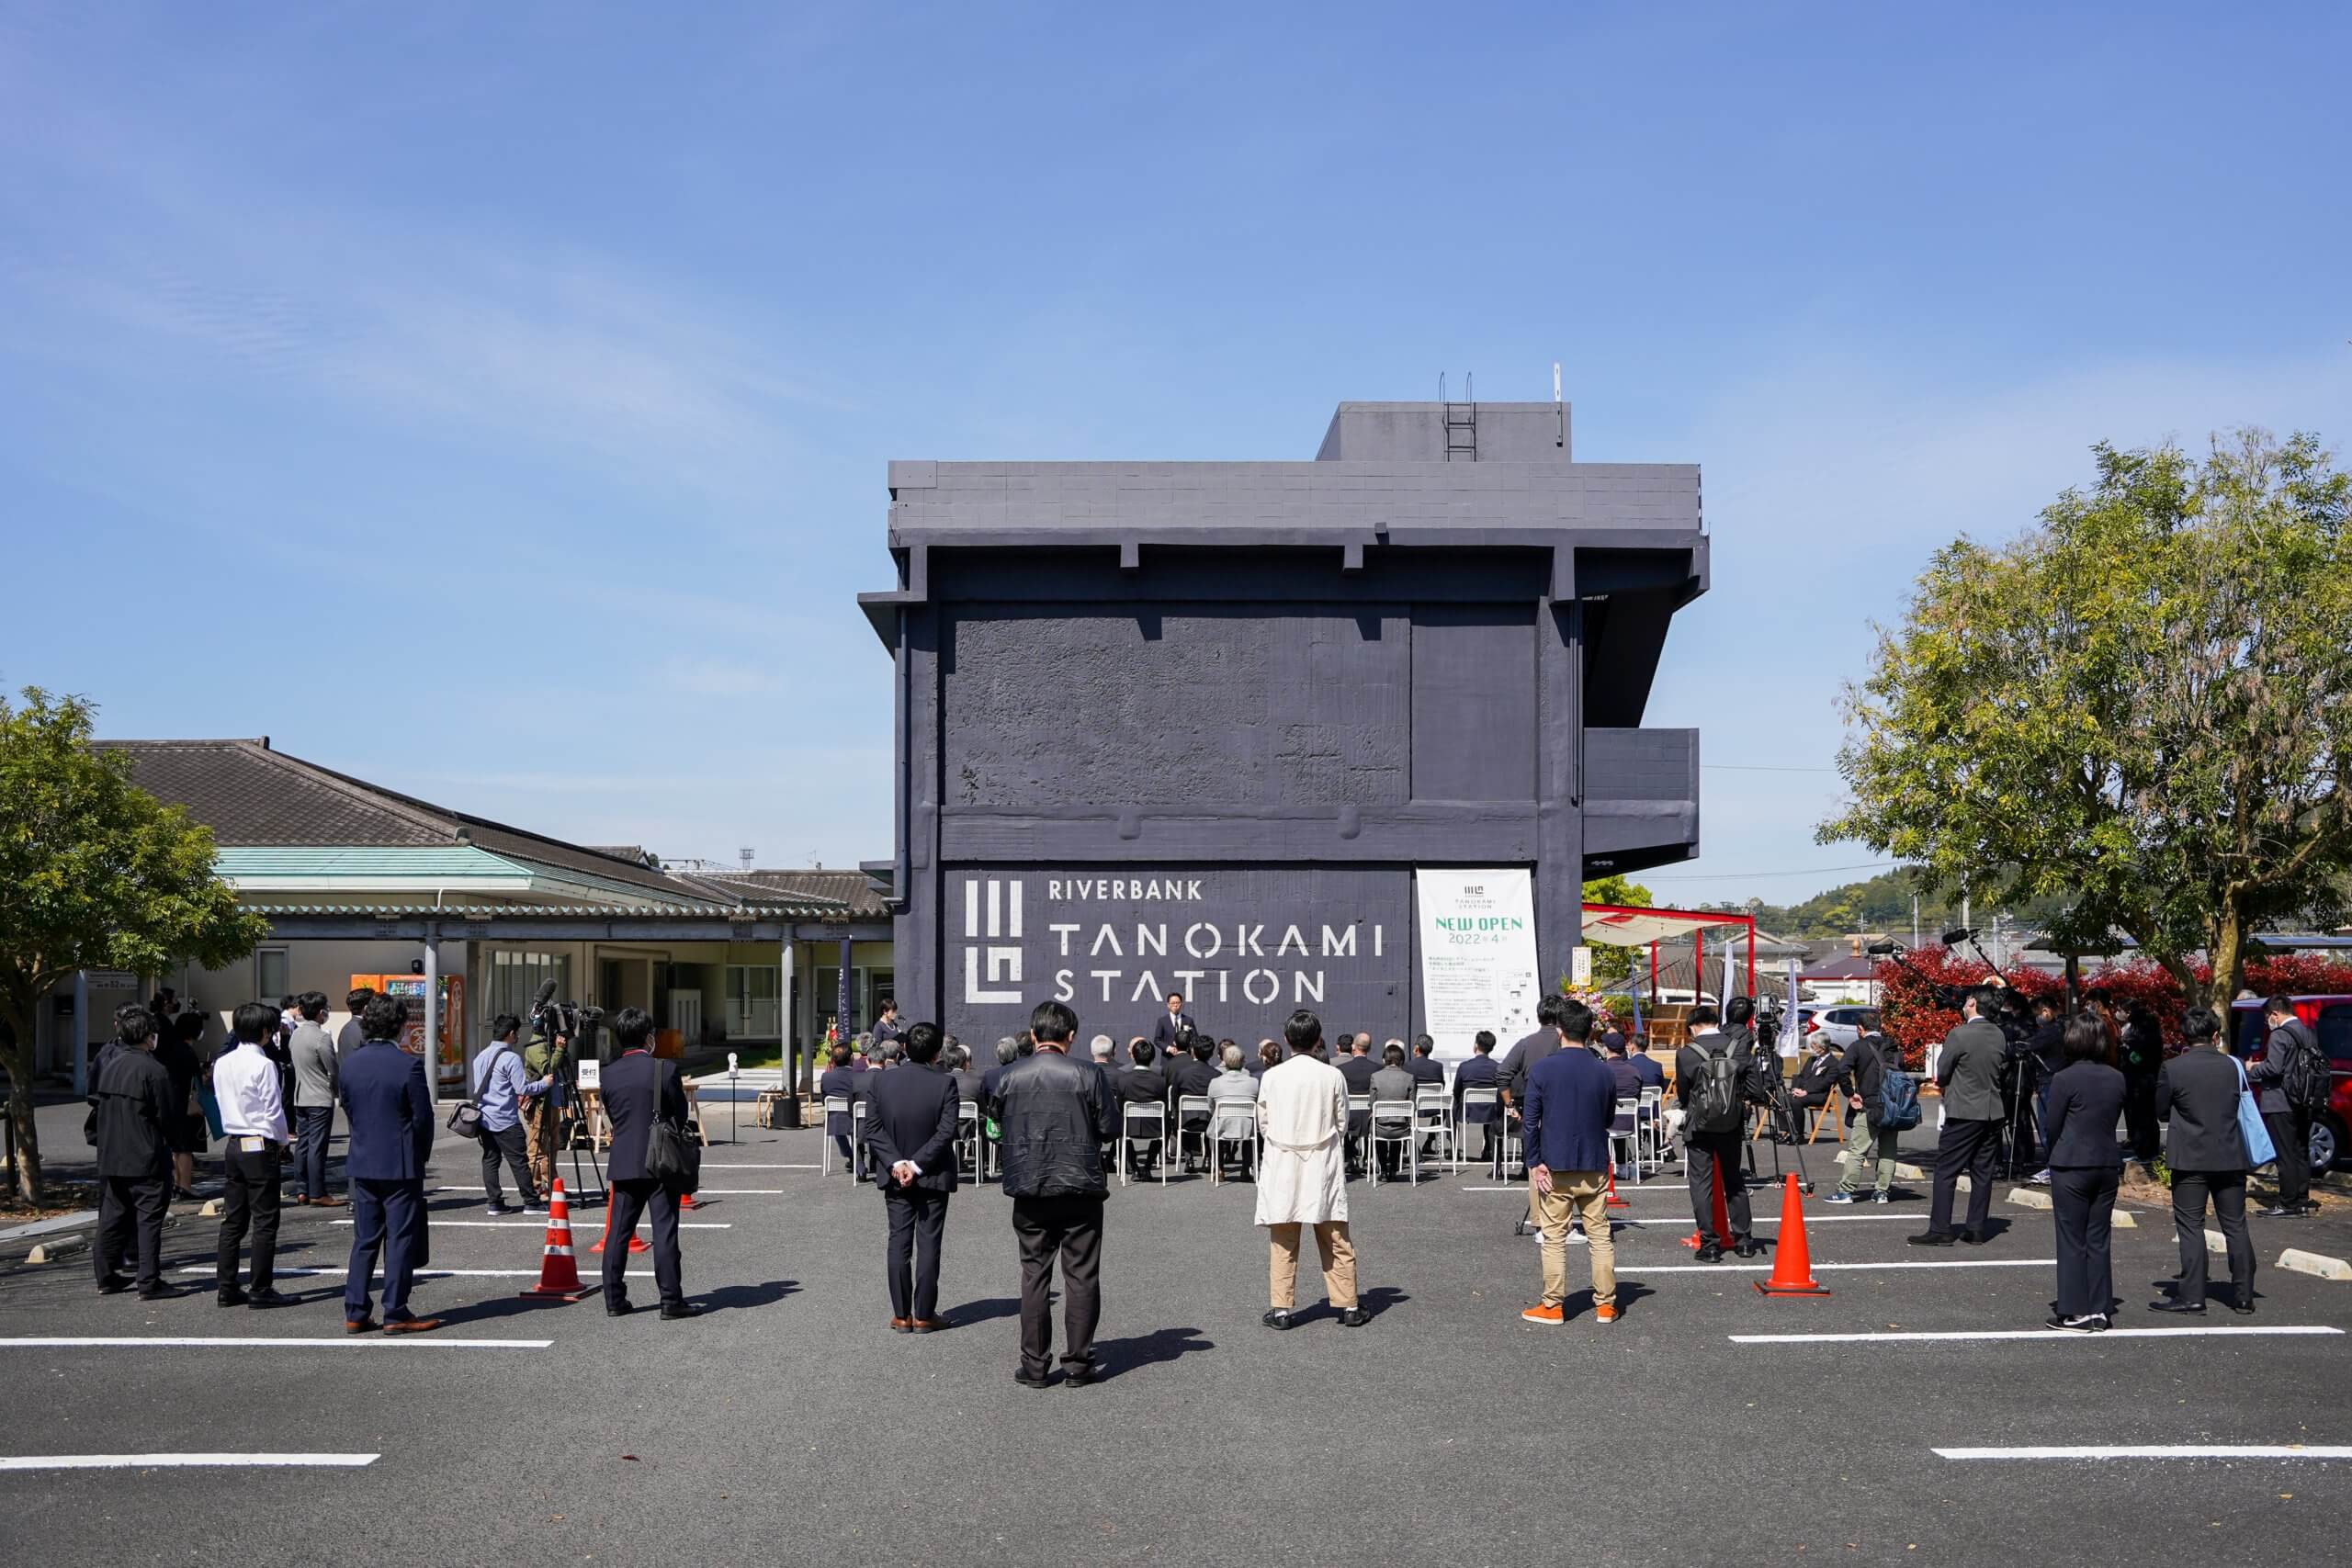 南九州市川辺町に、食をつうじて地域から新しい働き方を提案する複合施設タノカミステーションがオープンしました！